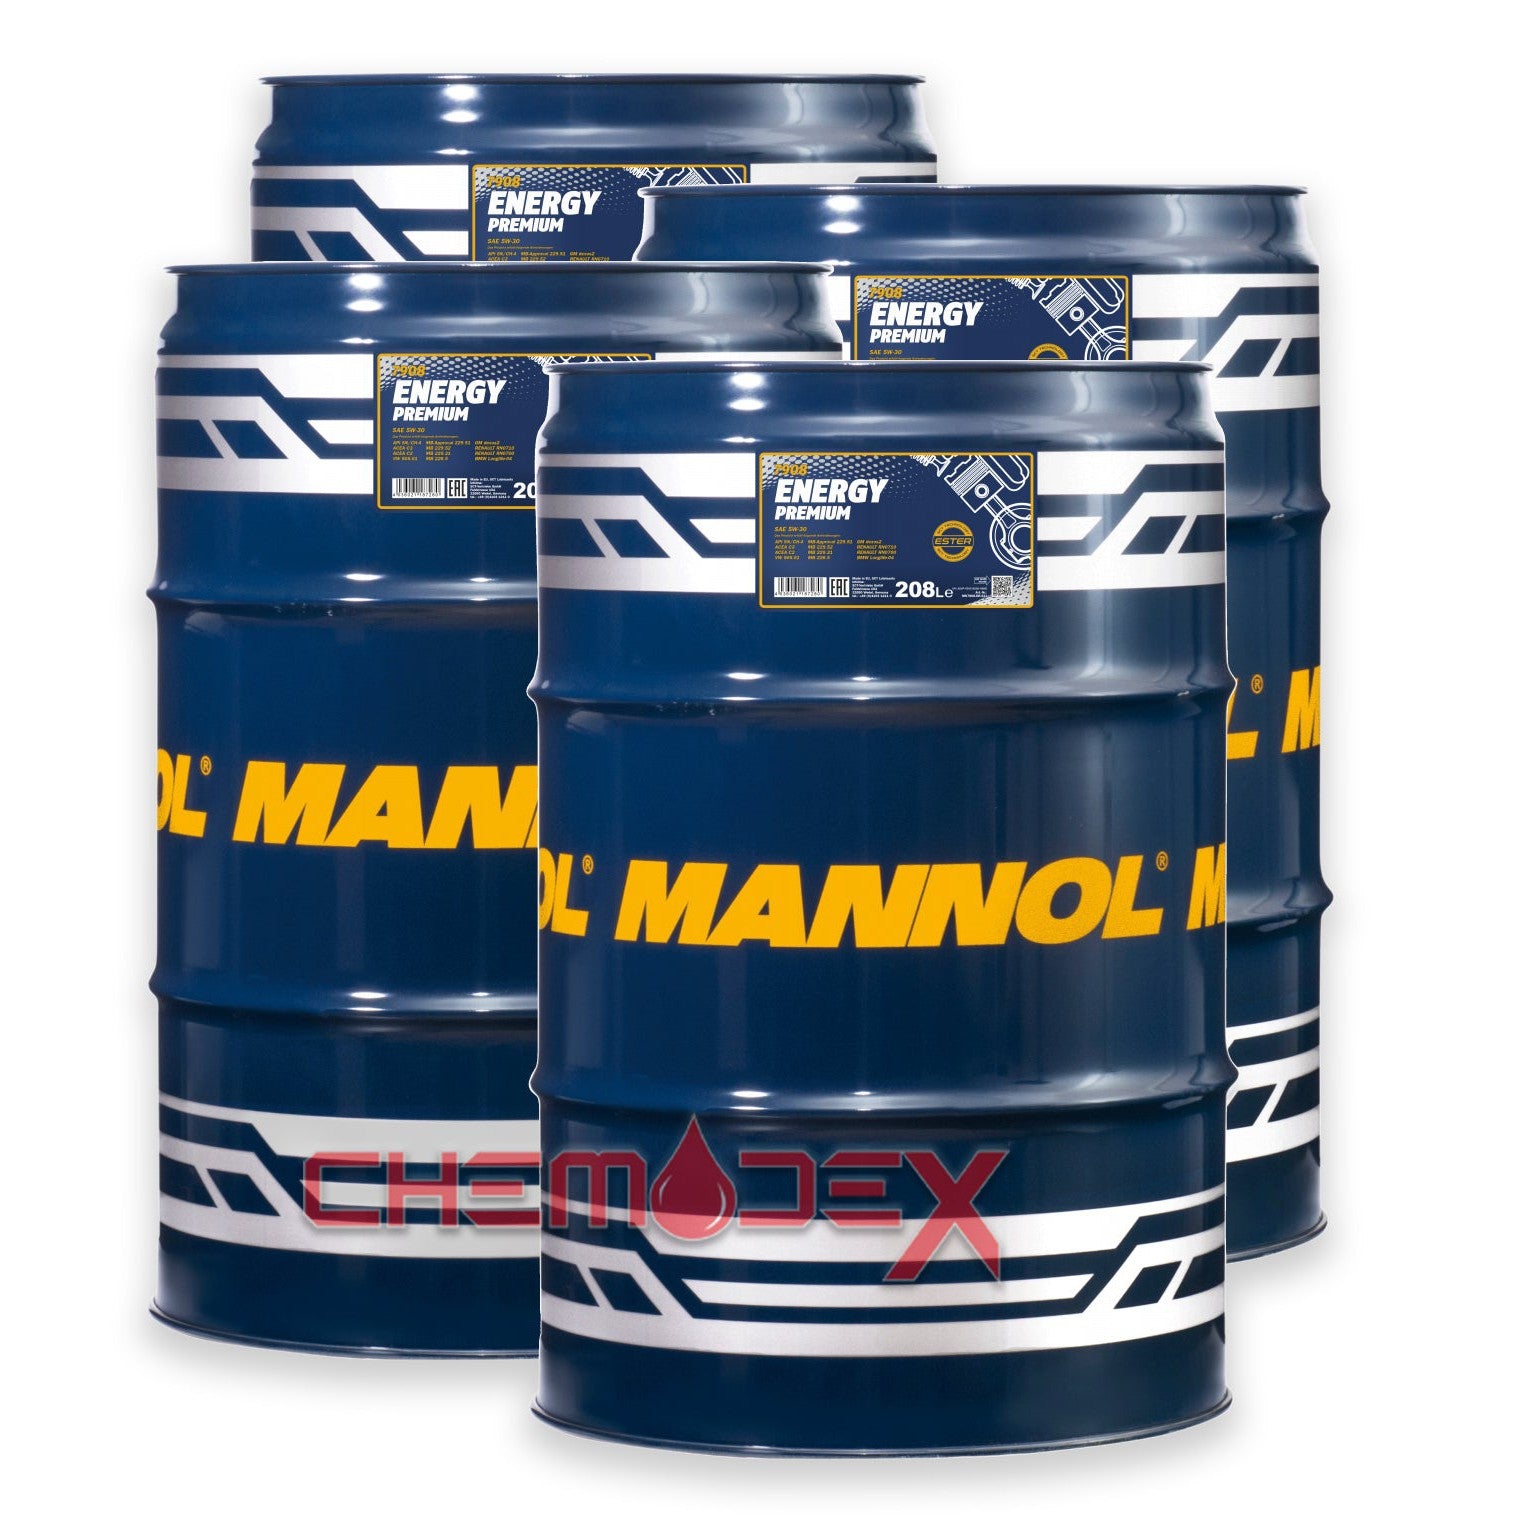 4 x MANNOL Energy Premium C2/C3 SAE 5W30 208L Fully Synthetic Premium Engine Oil